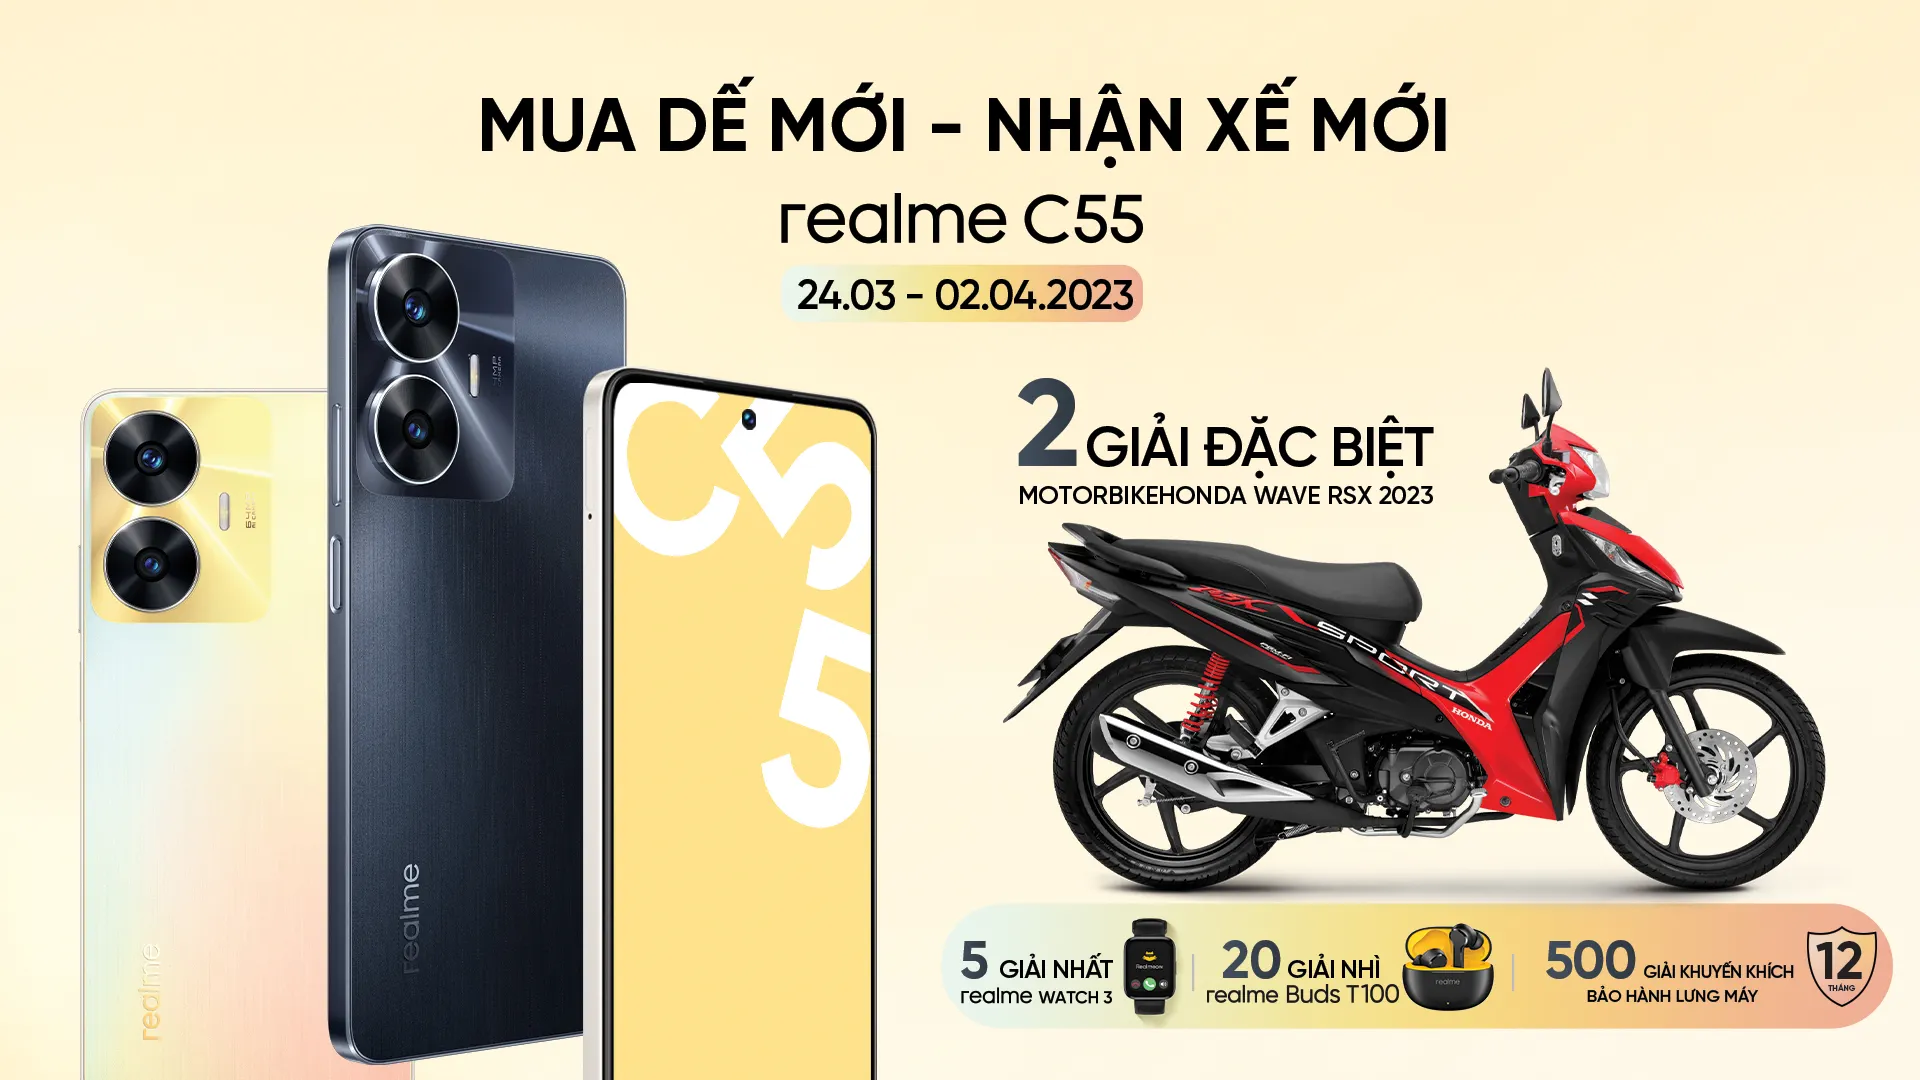 Mở bán realme C55 tại Việt Nam, giảm giá 300,000 VND trực tiếp và tung cơ hội trúng Honda Wave RSX